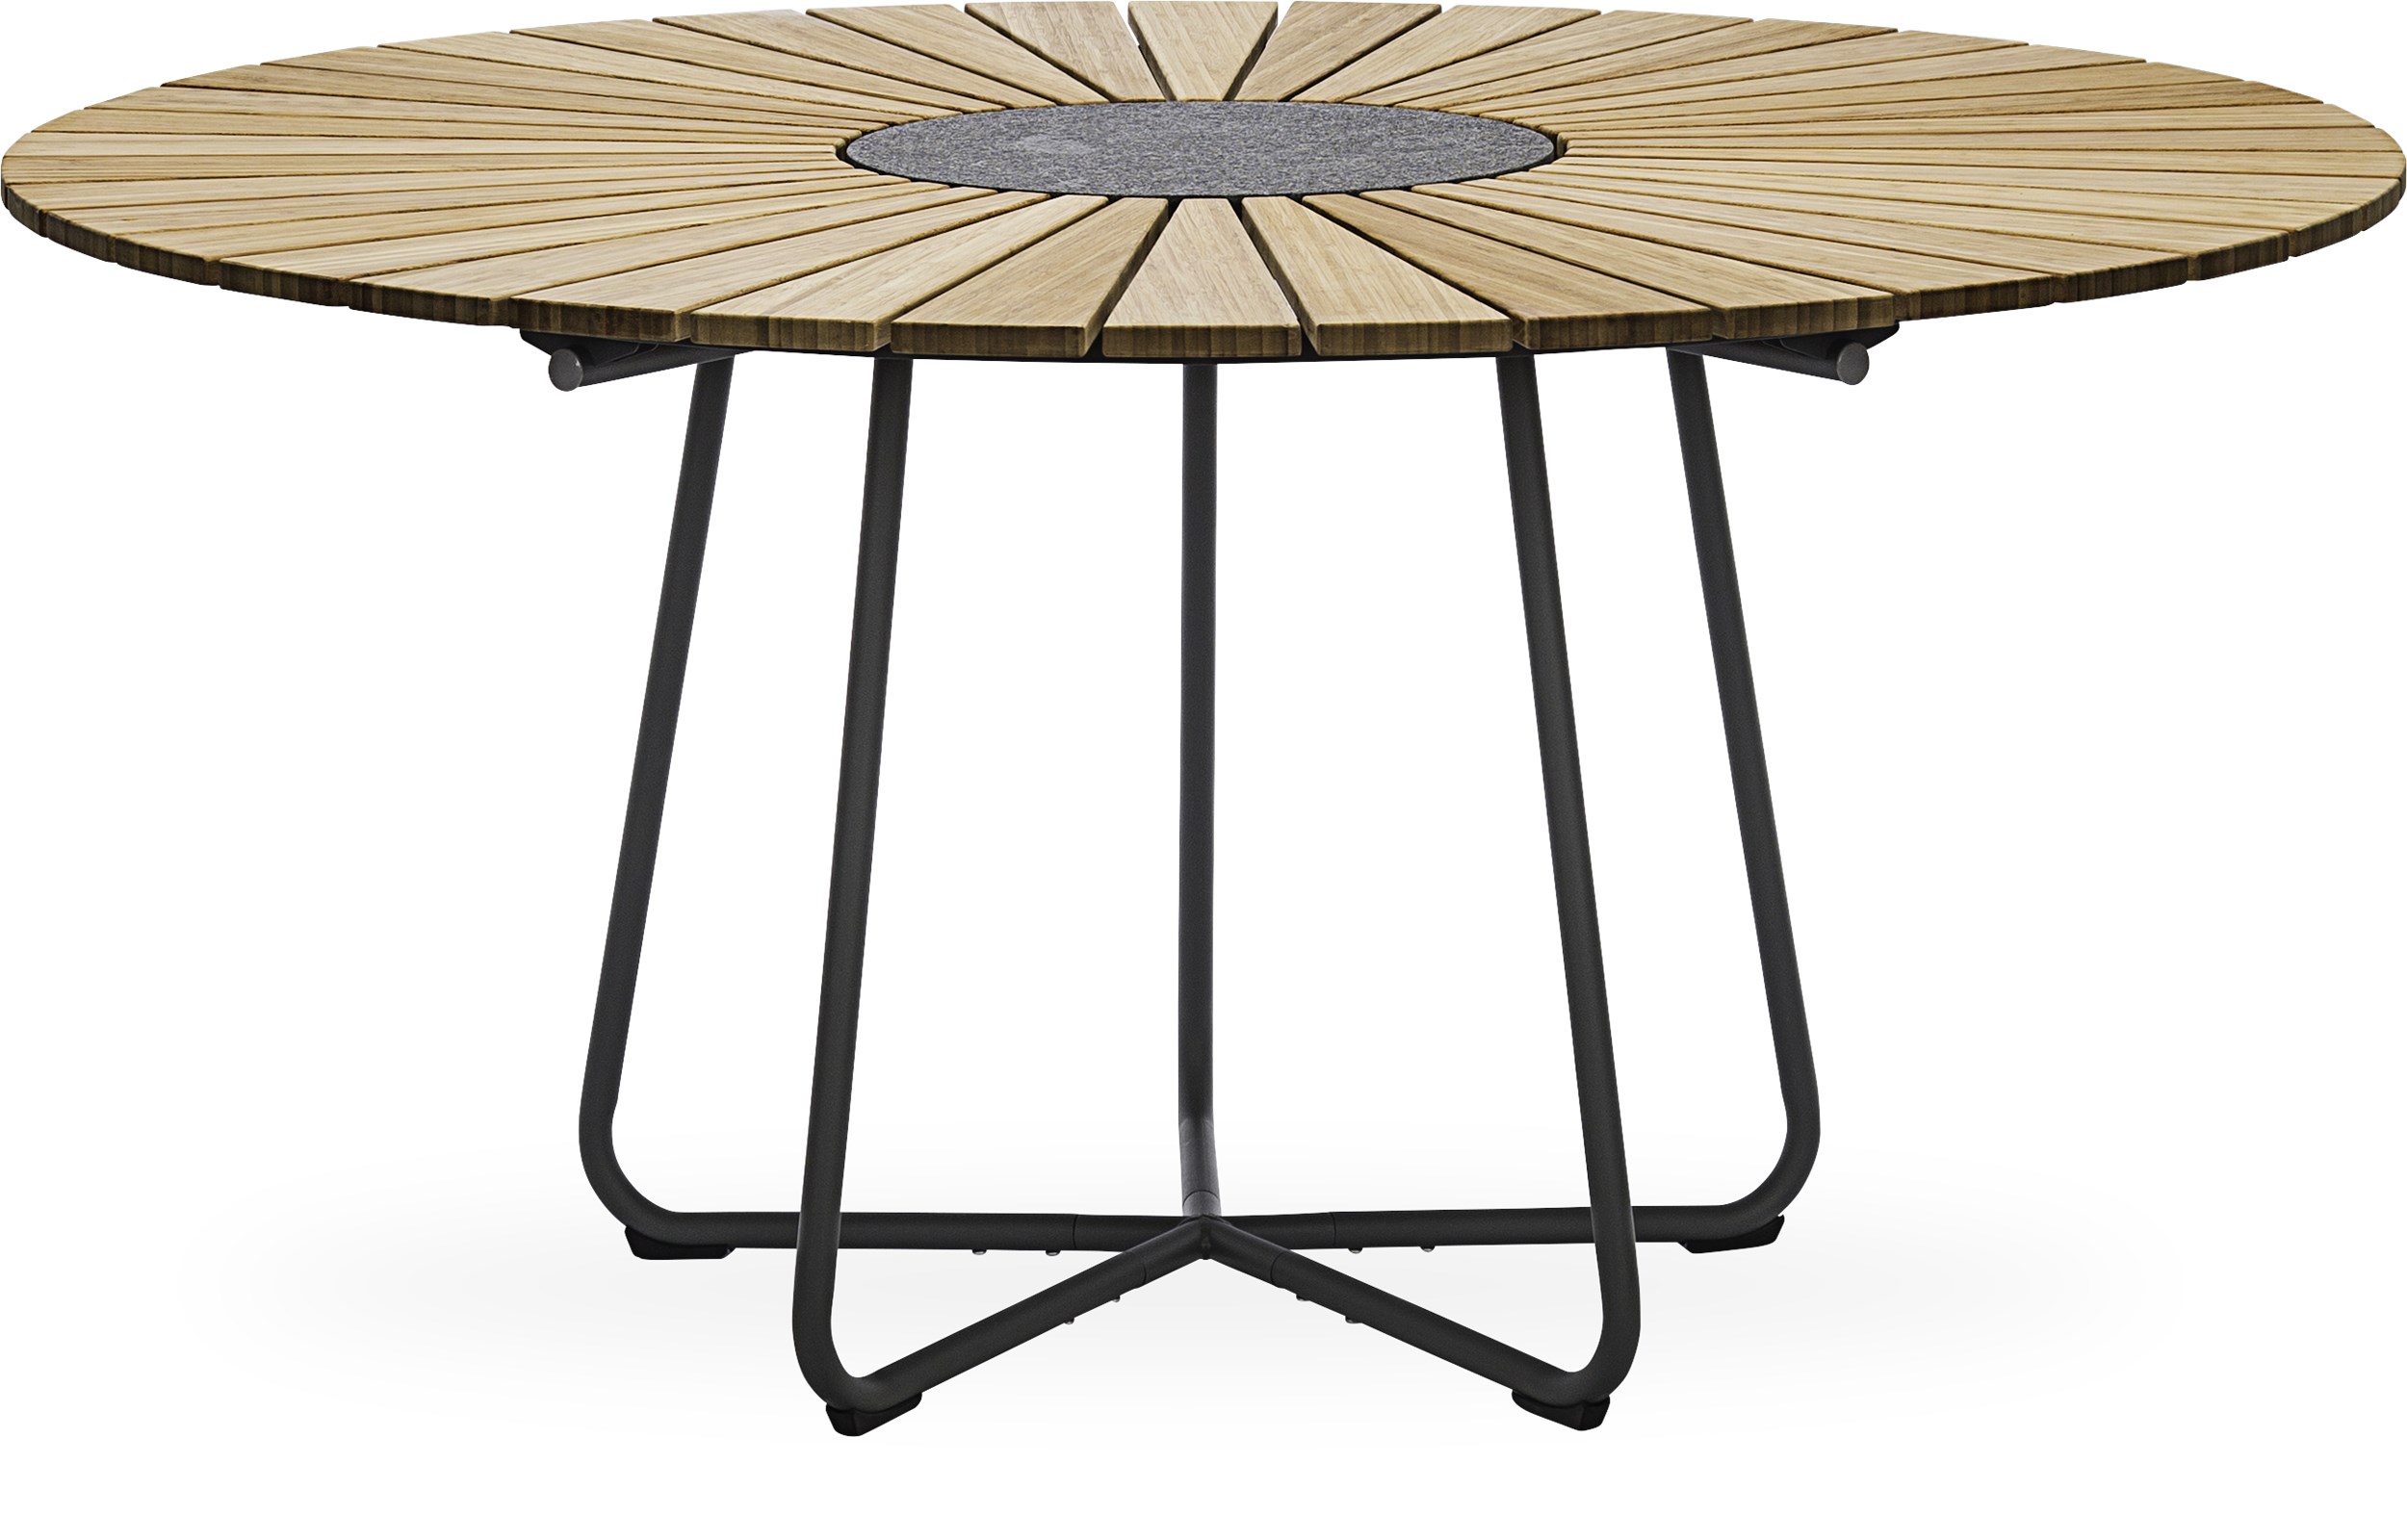 Circle Trädgårdsbord 150 x 74,5 cm - Oljebehandlad bambu, granit i mitten och stomme i stålgrå metall